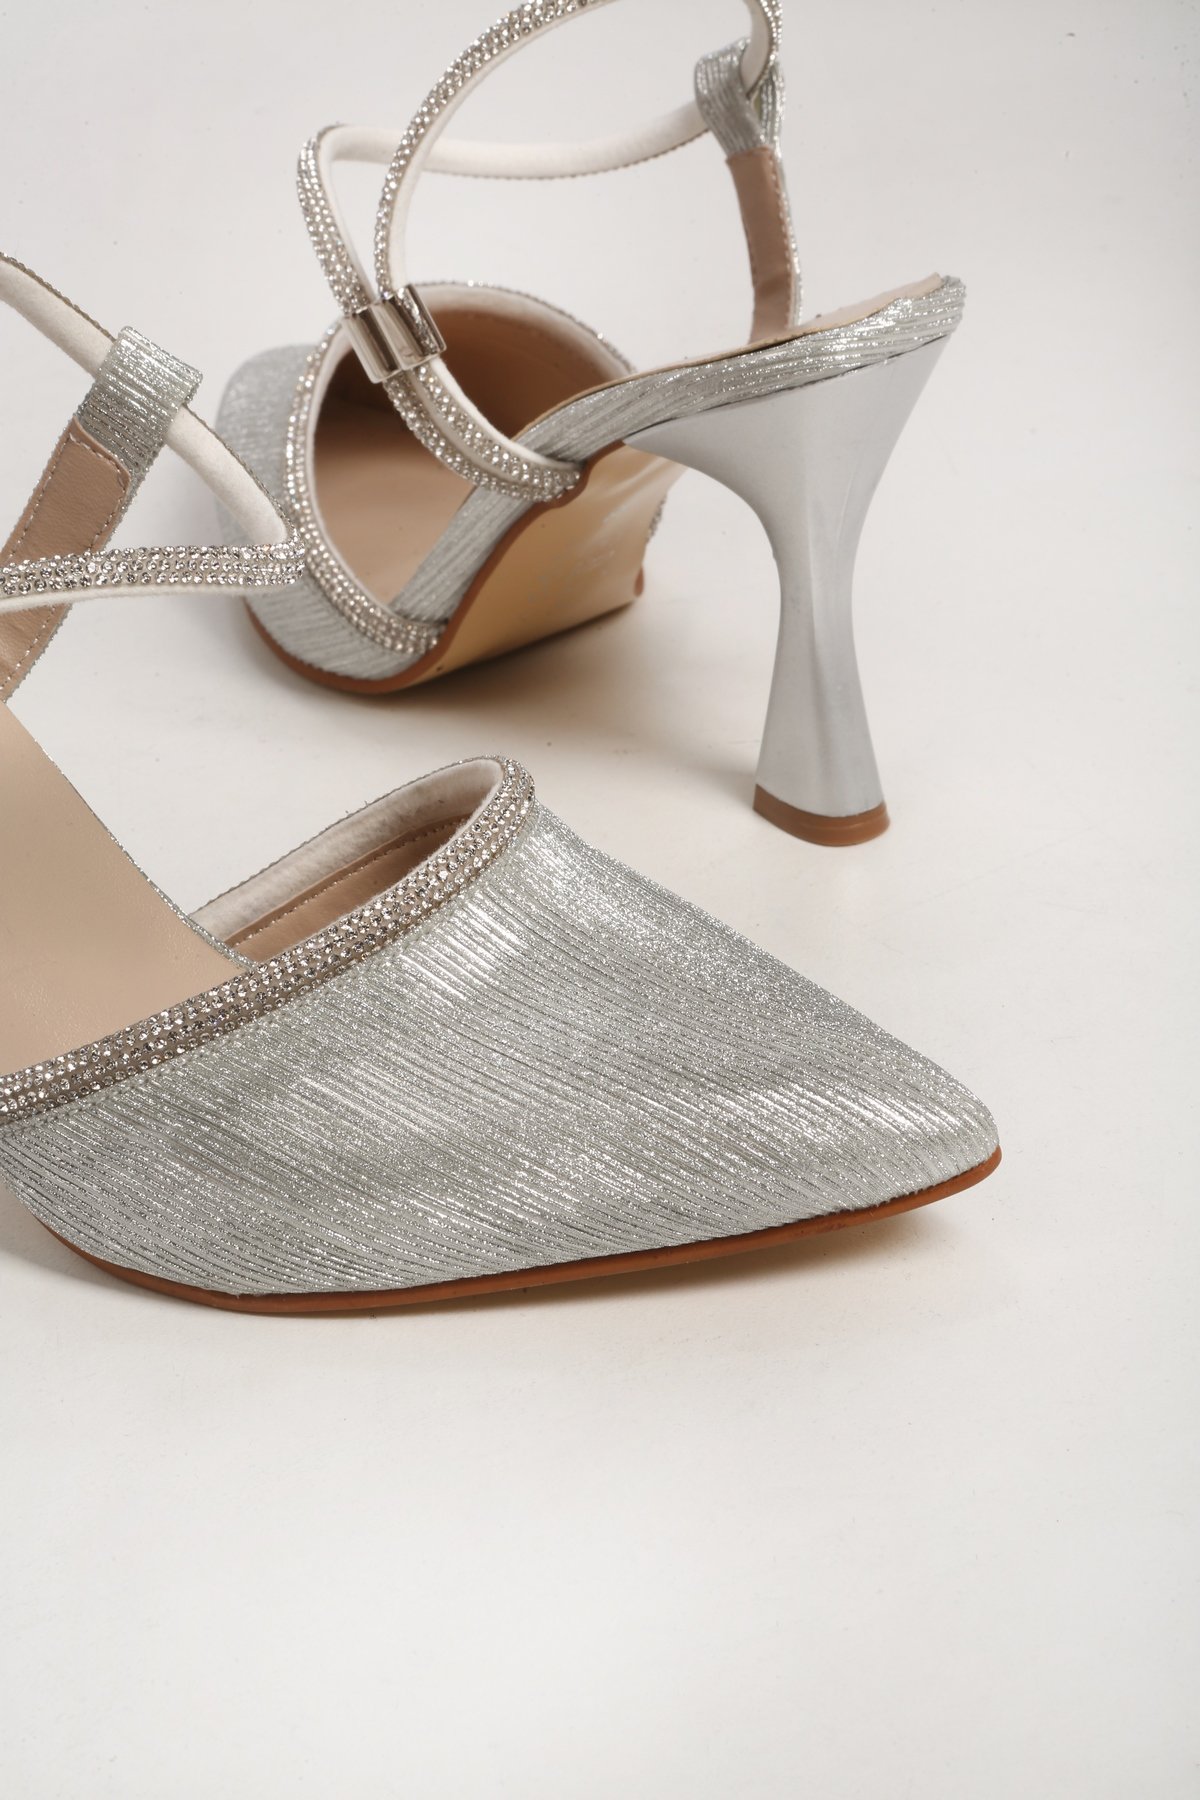 Kadın Avril Gümüş Simli Taşlı Topuklu Ayakkabı